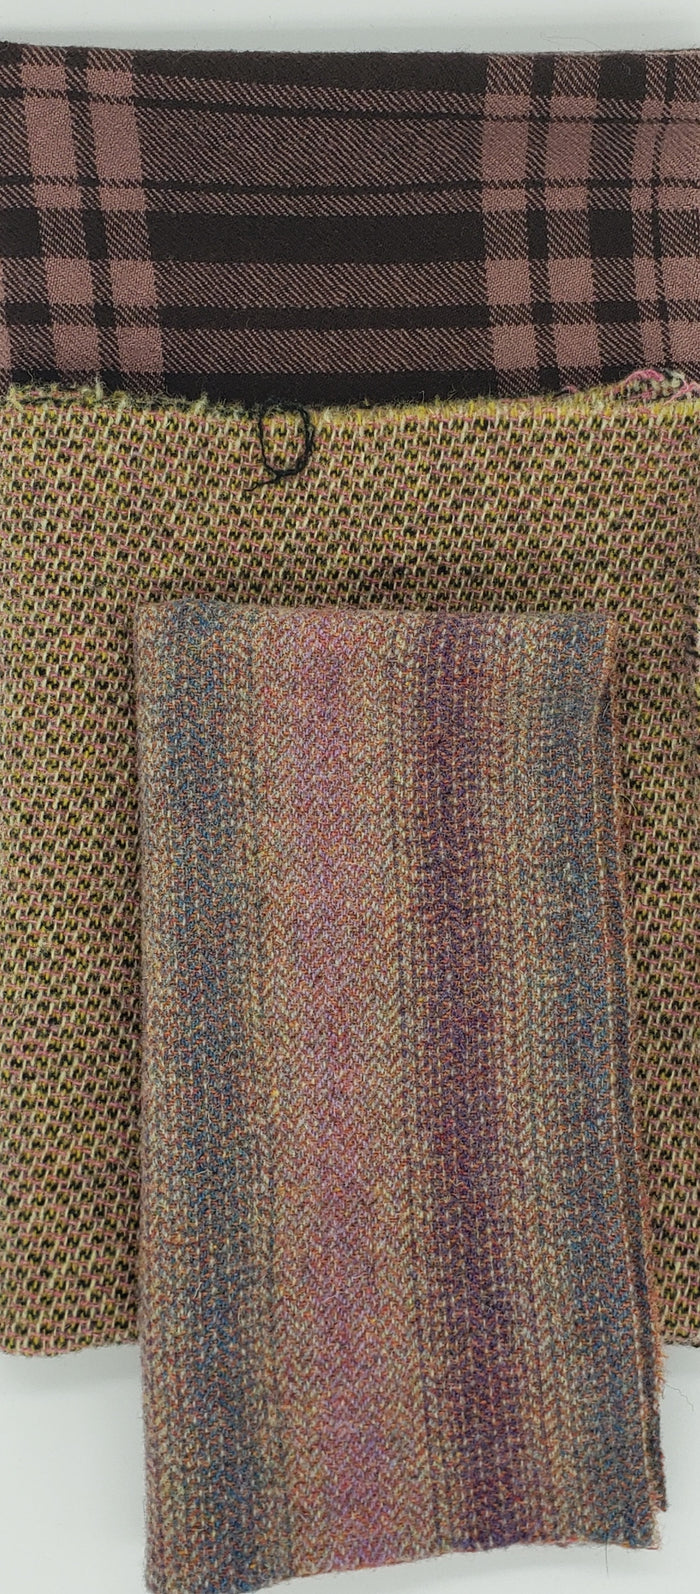 MAUVE - Wool Bundle - 1/3 yard - 100% Wool for Rug Hooking & Wool Applique - RSS311